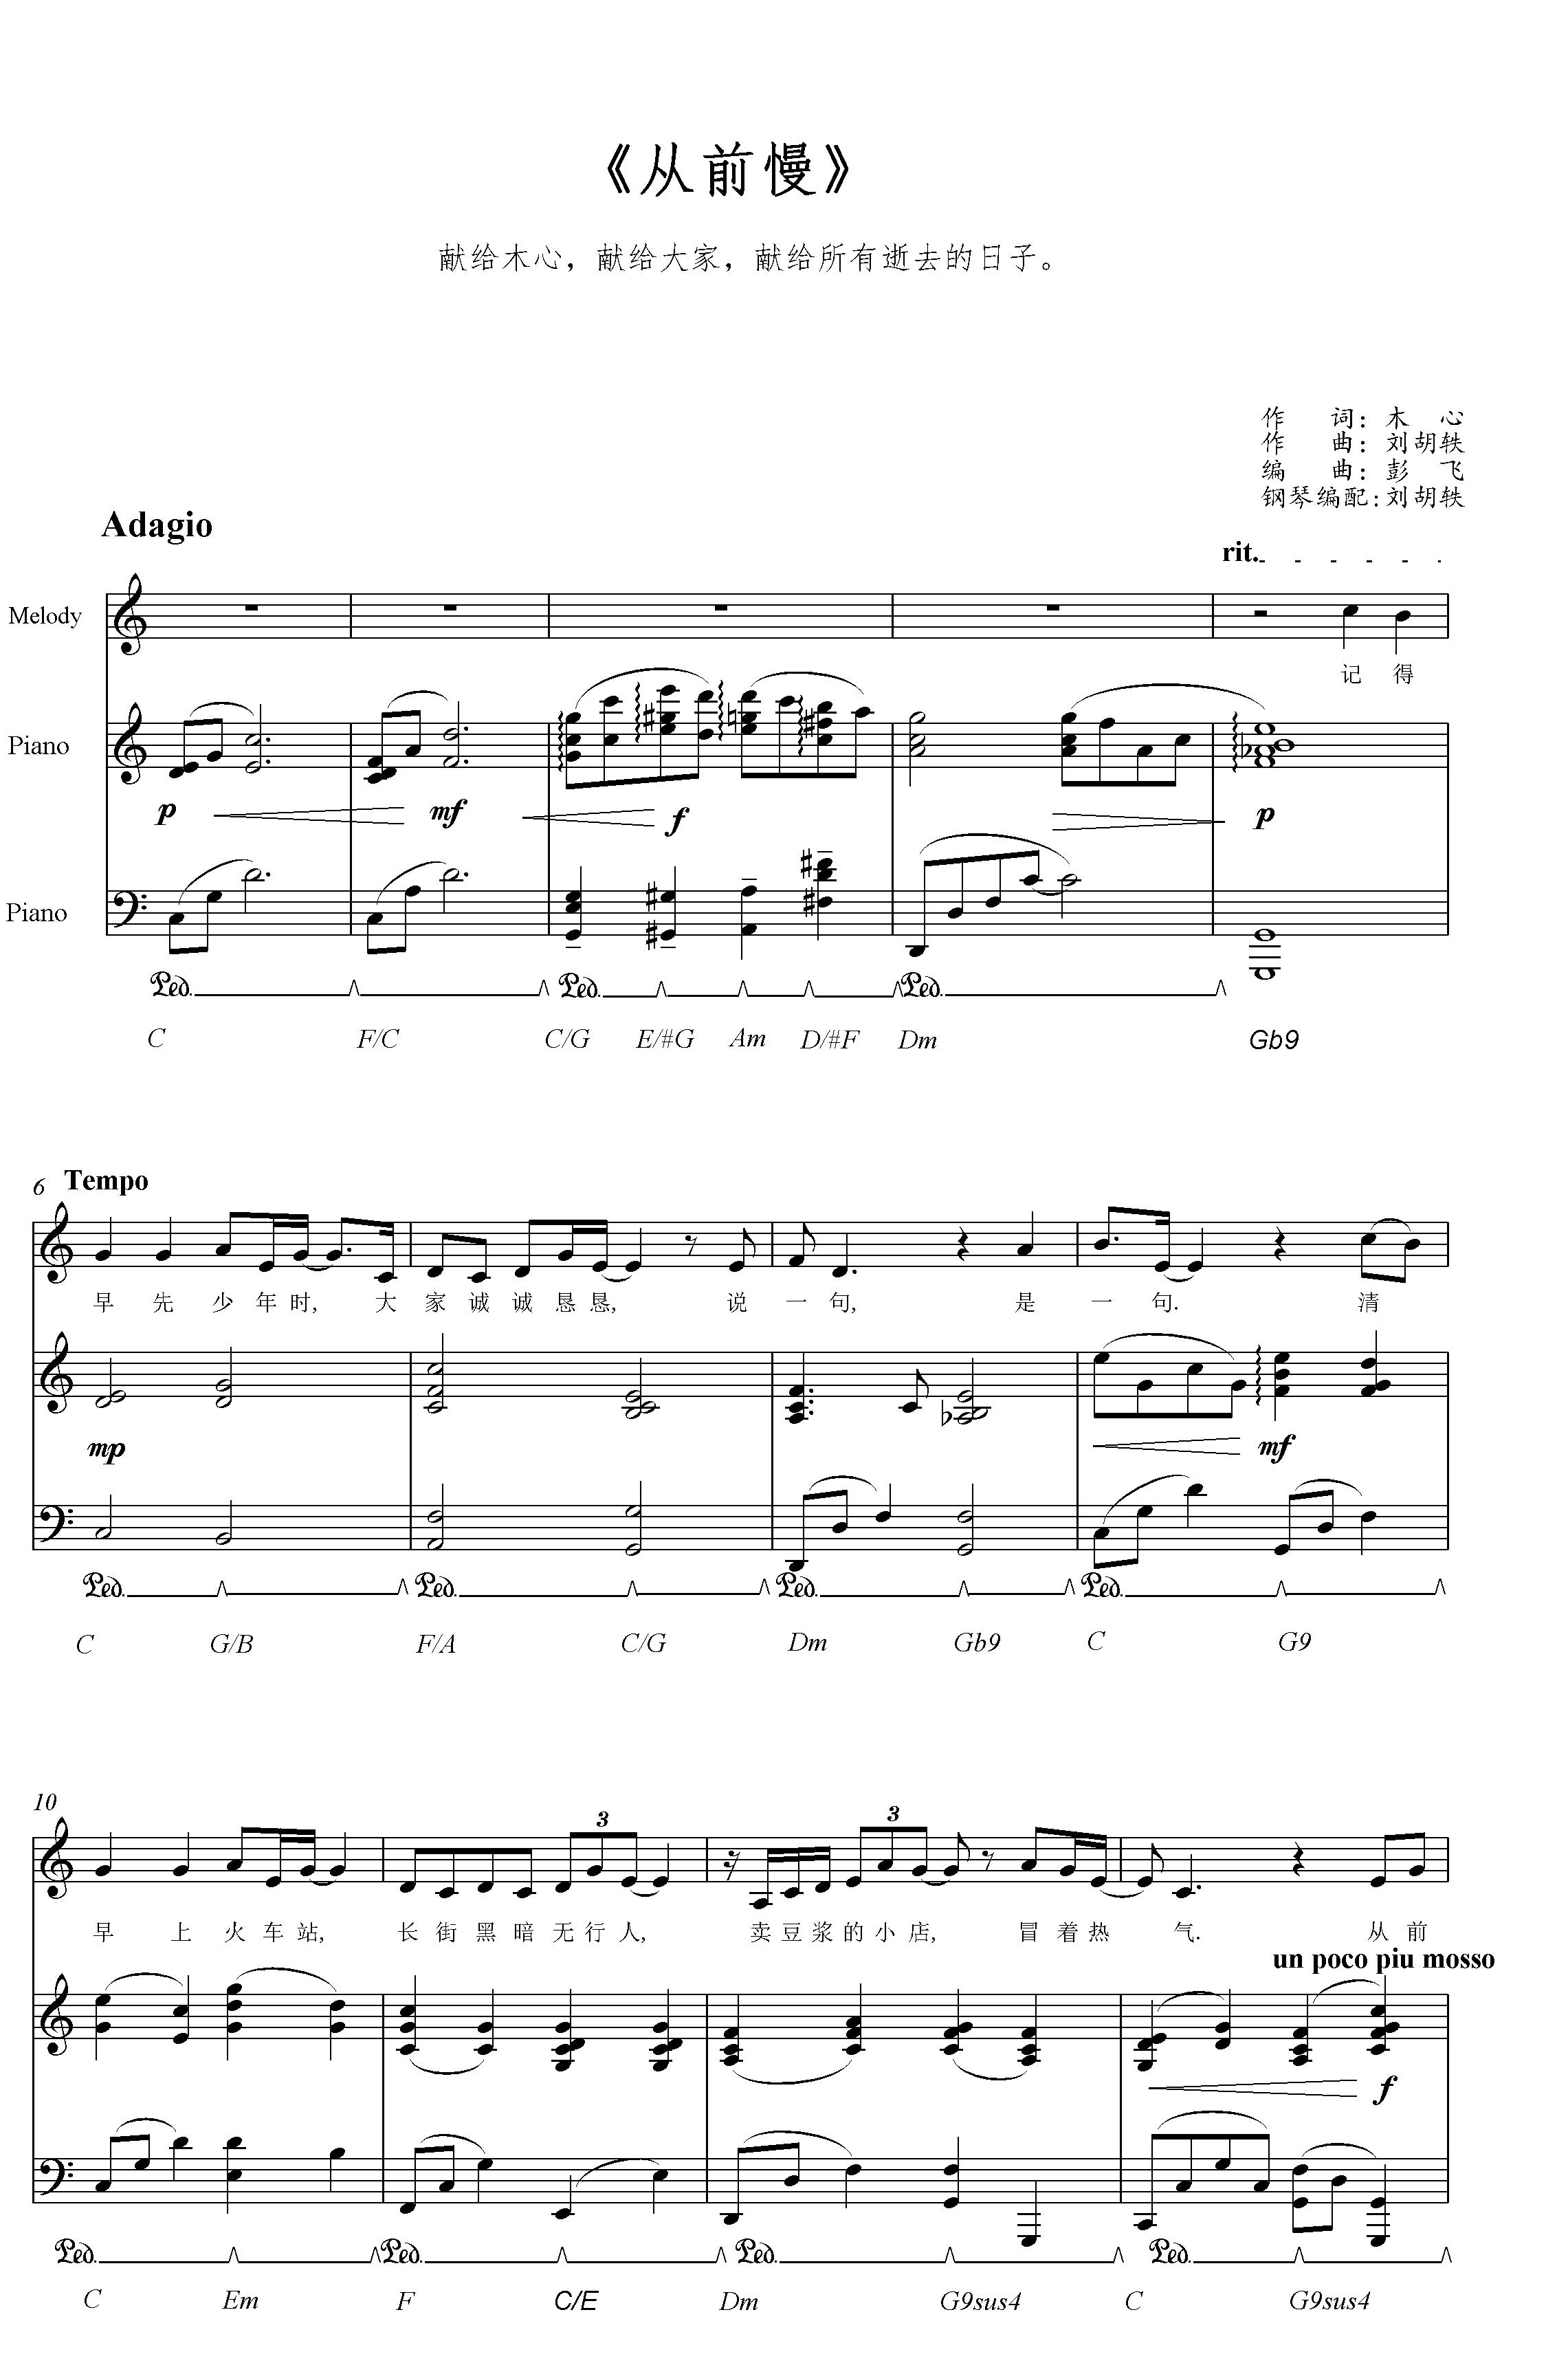 简单版《手写的从前》钢琴谱 - 周杰伦0基础钢琴简谱 - 高清谱子图片 - 钢琴简谱